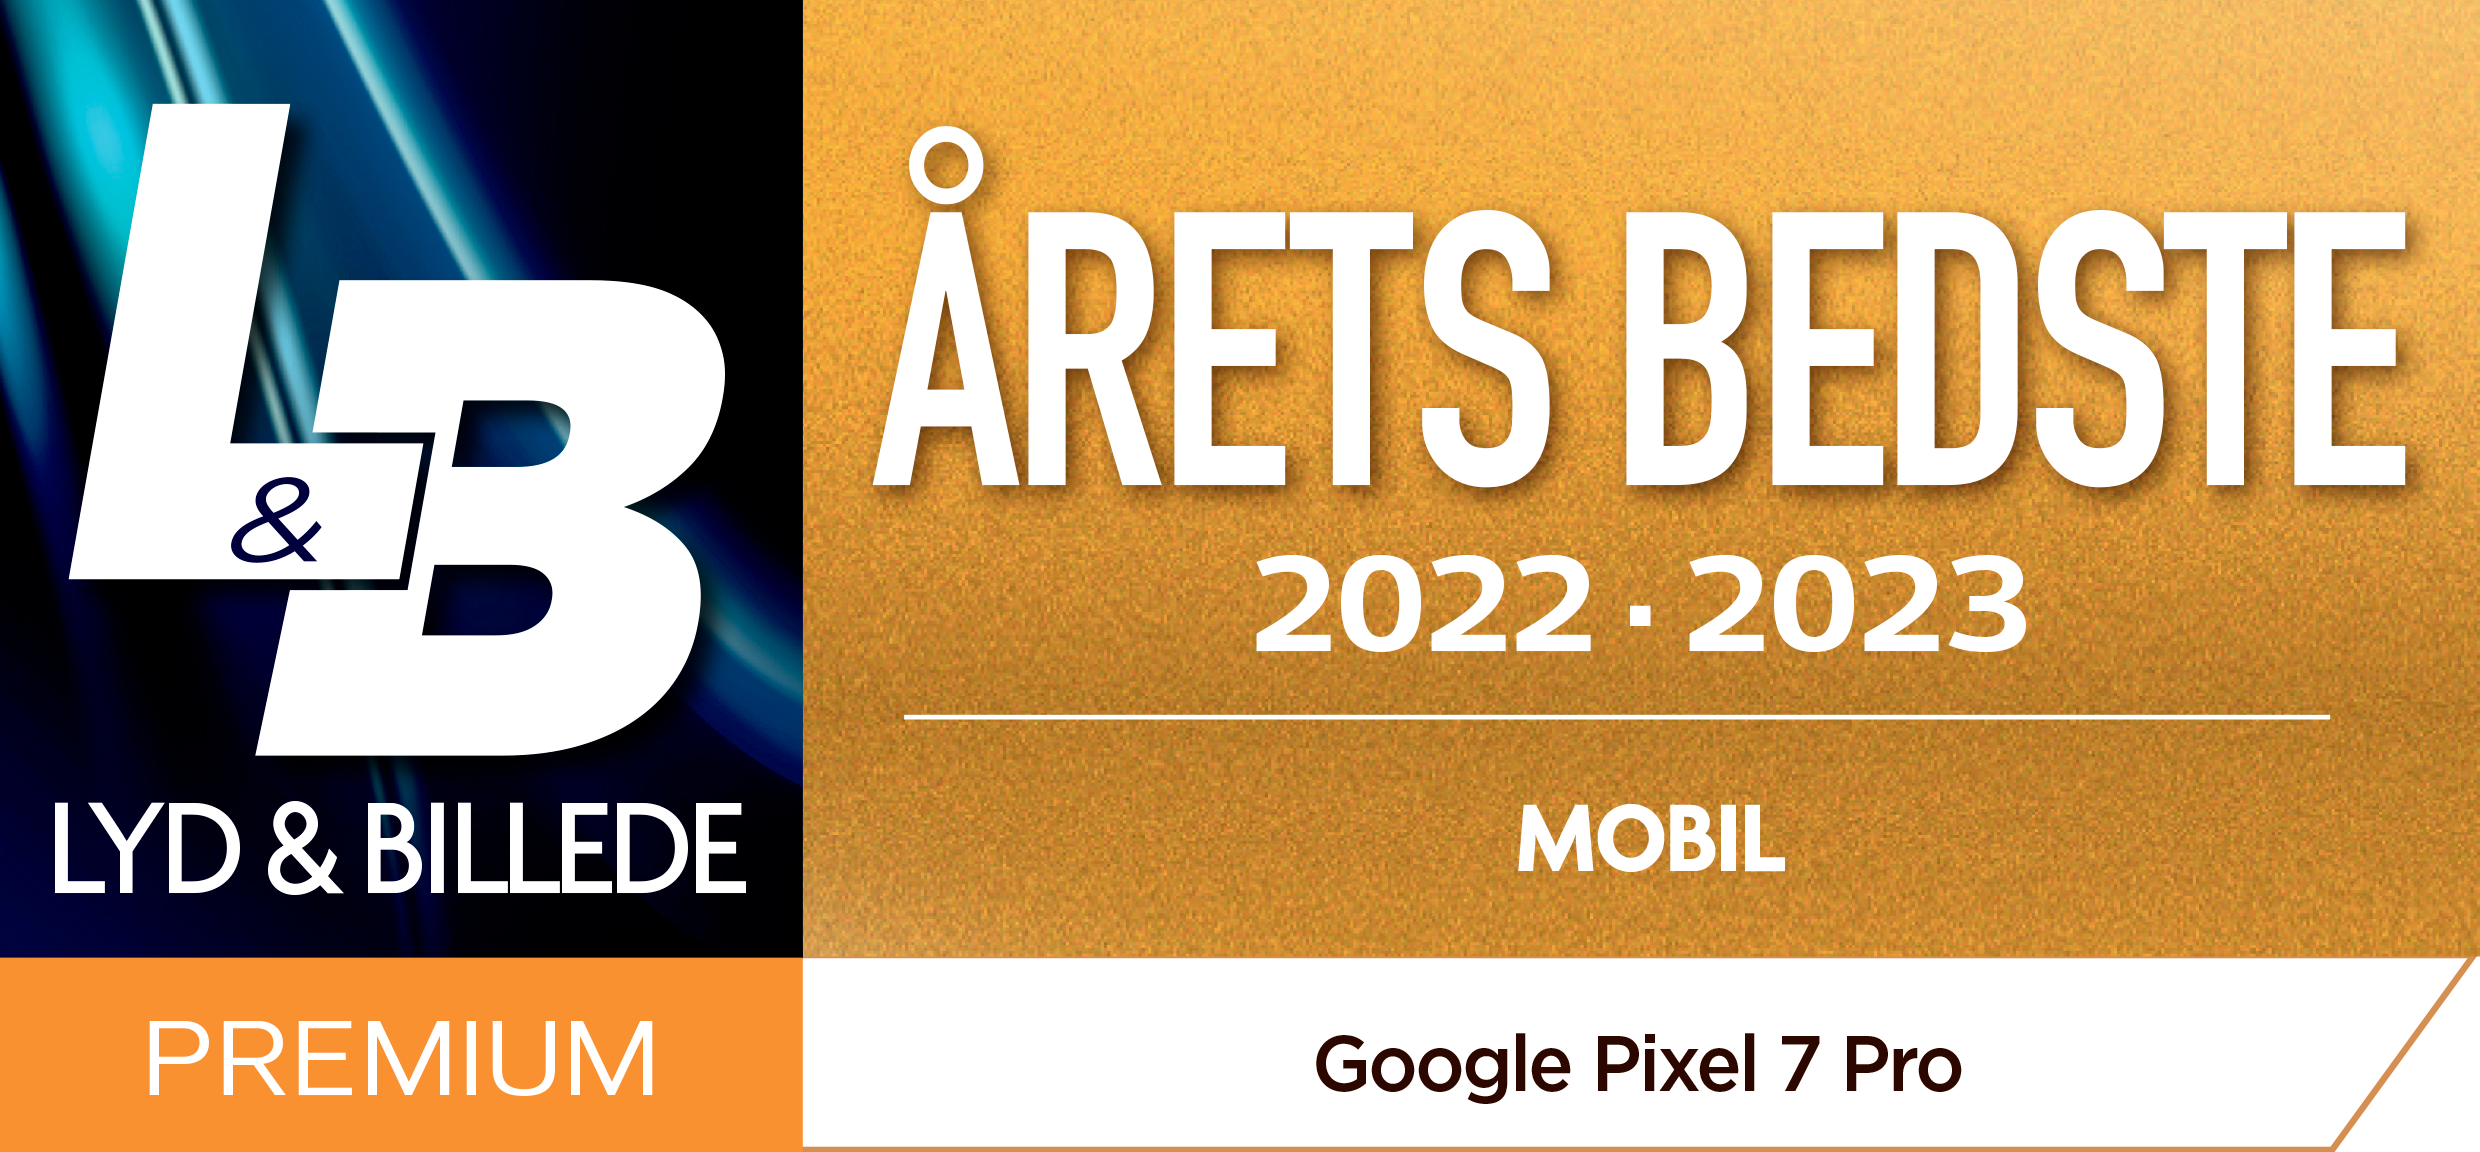 Læs anmeldelserne af Google Pixel 7 Pro, som har vundet årets bedste mobil 2022-2023